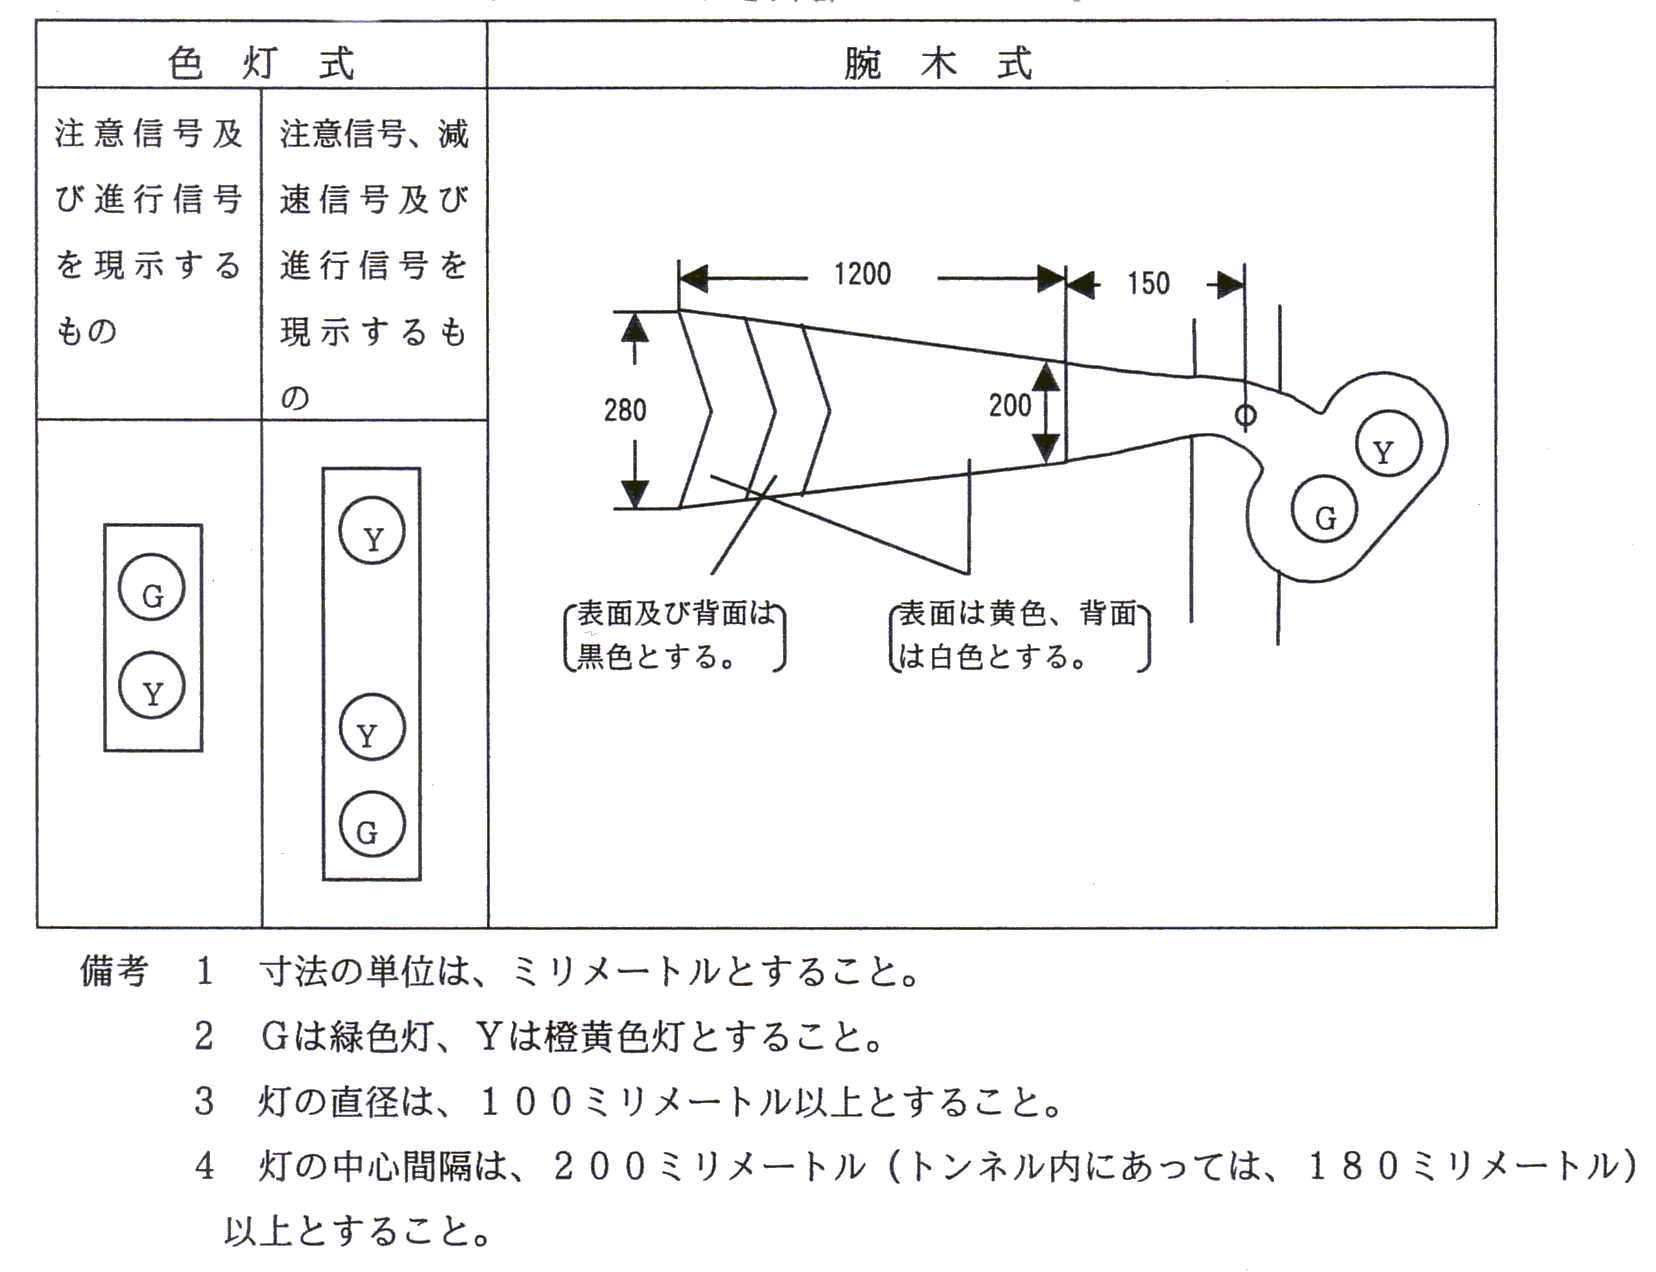 鉄道の技術上の基準に関する省令 第７章 第一節 一般社団法人 日本鉄道電気技術協会